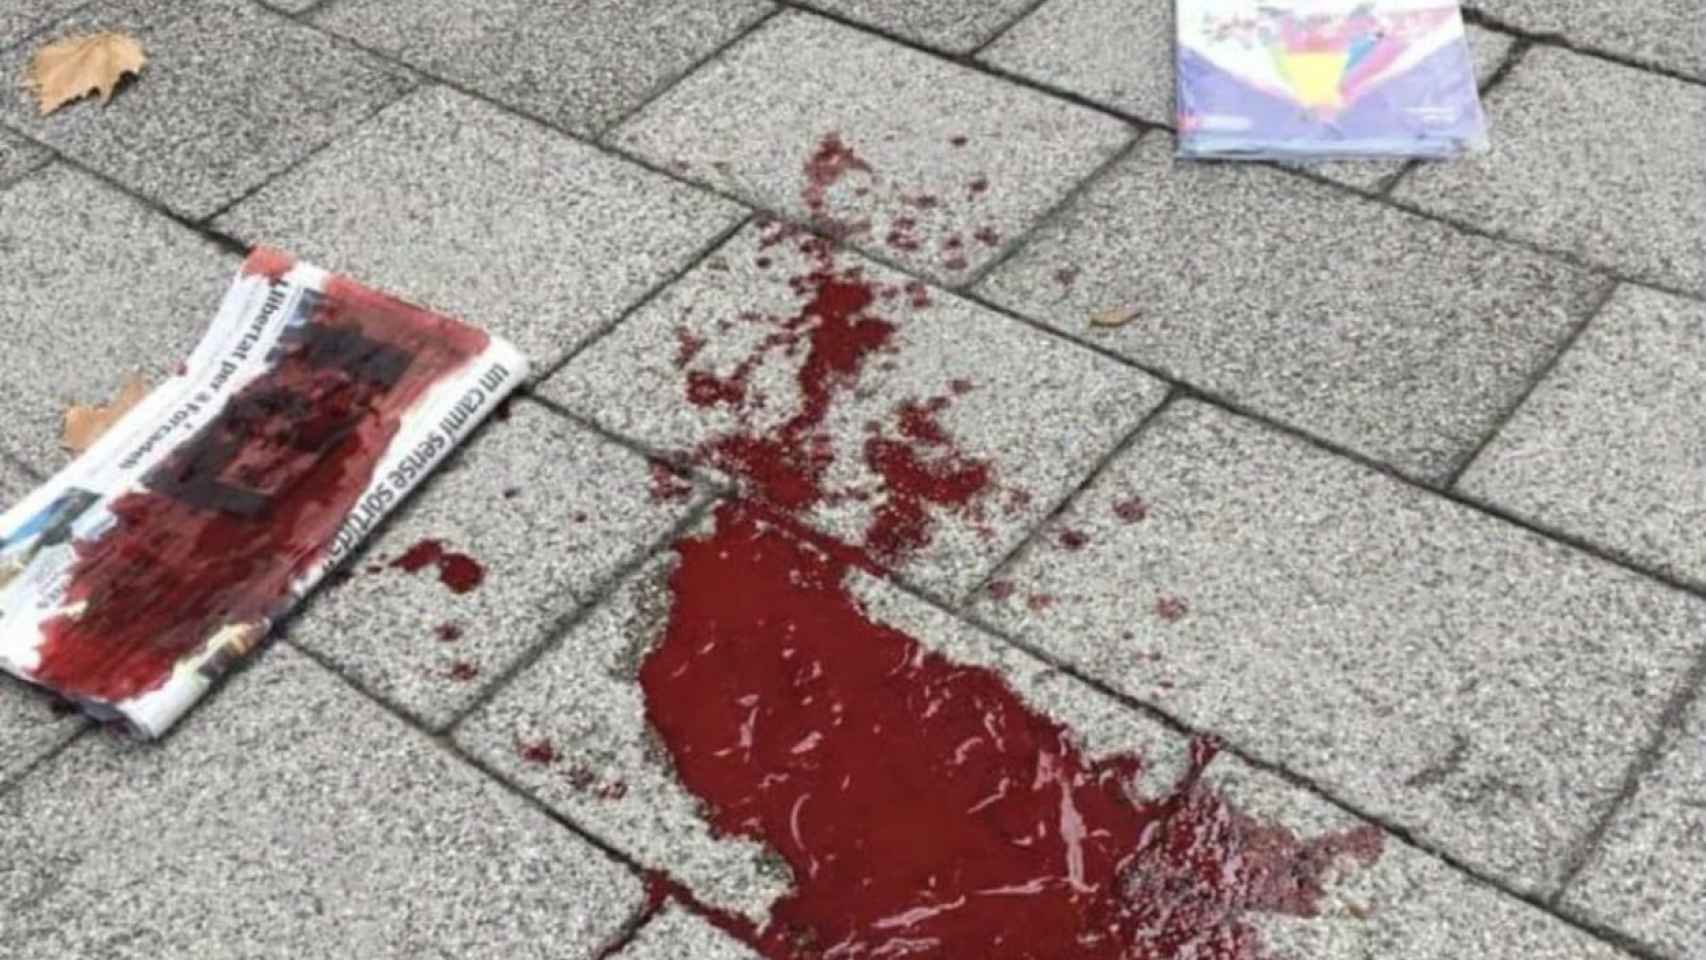 Reguero de sangre tras la agresión a un vecino de la Vila Olímpica / Twitter